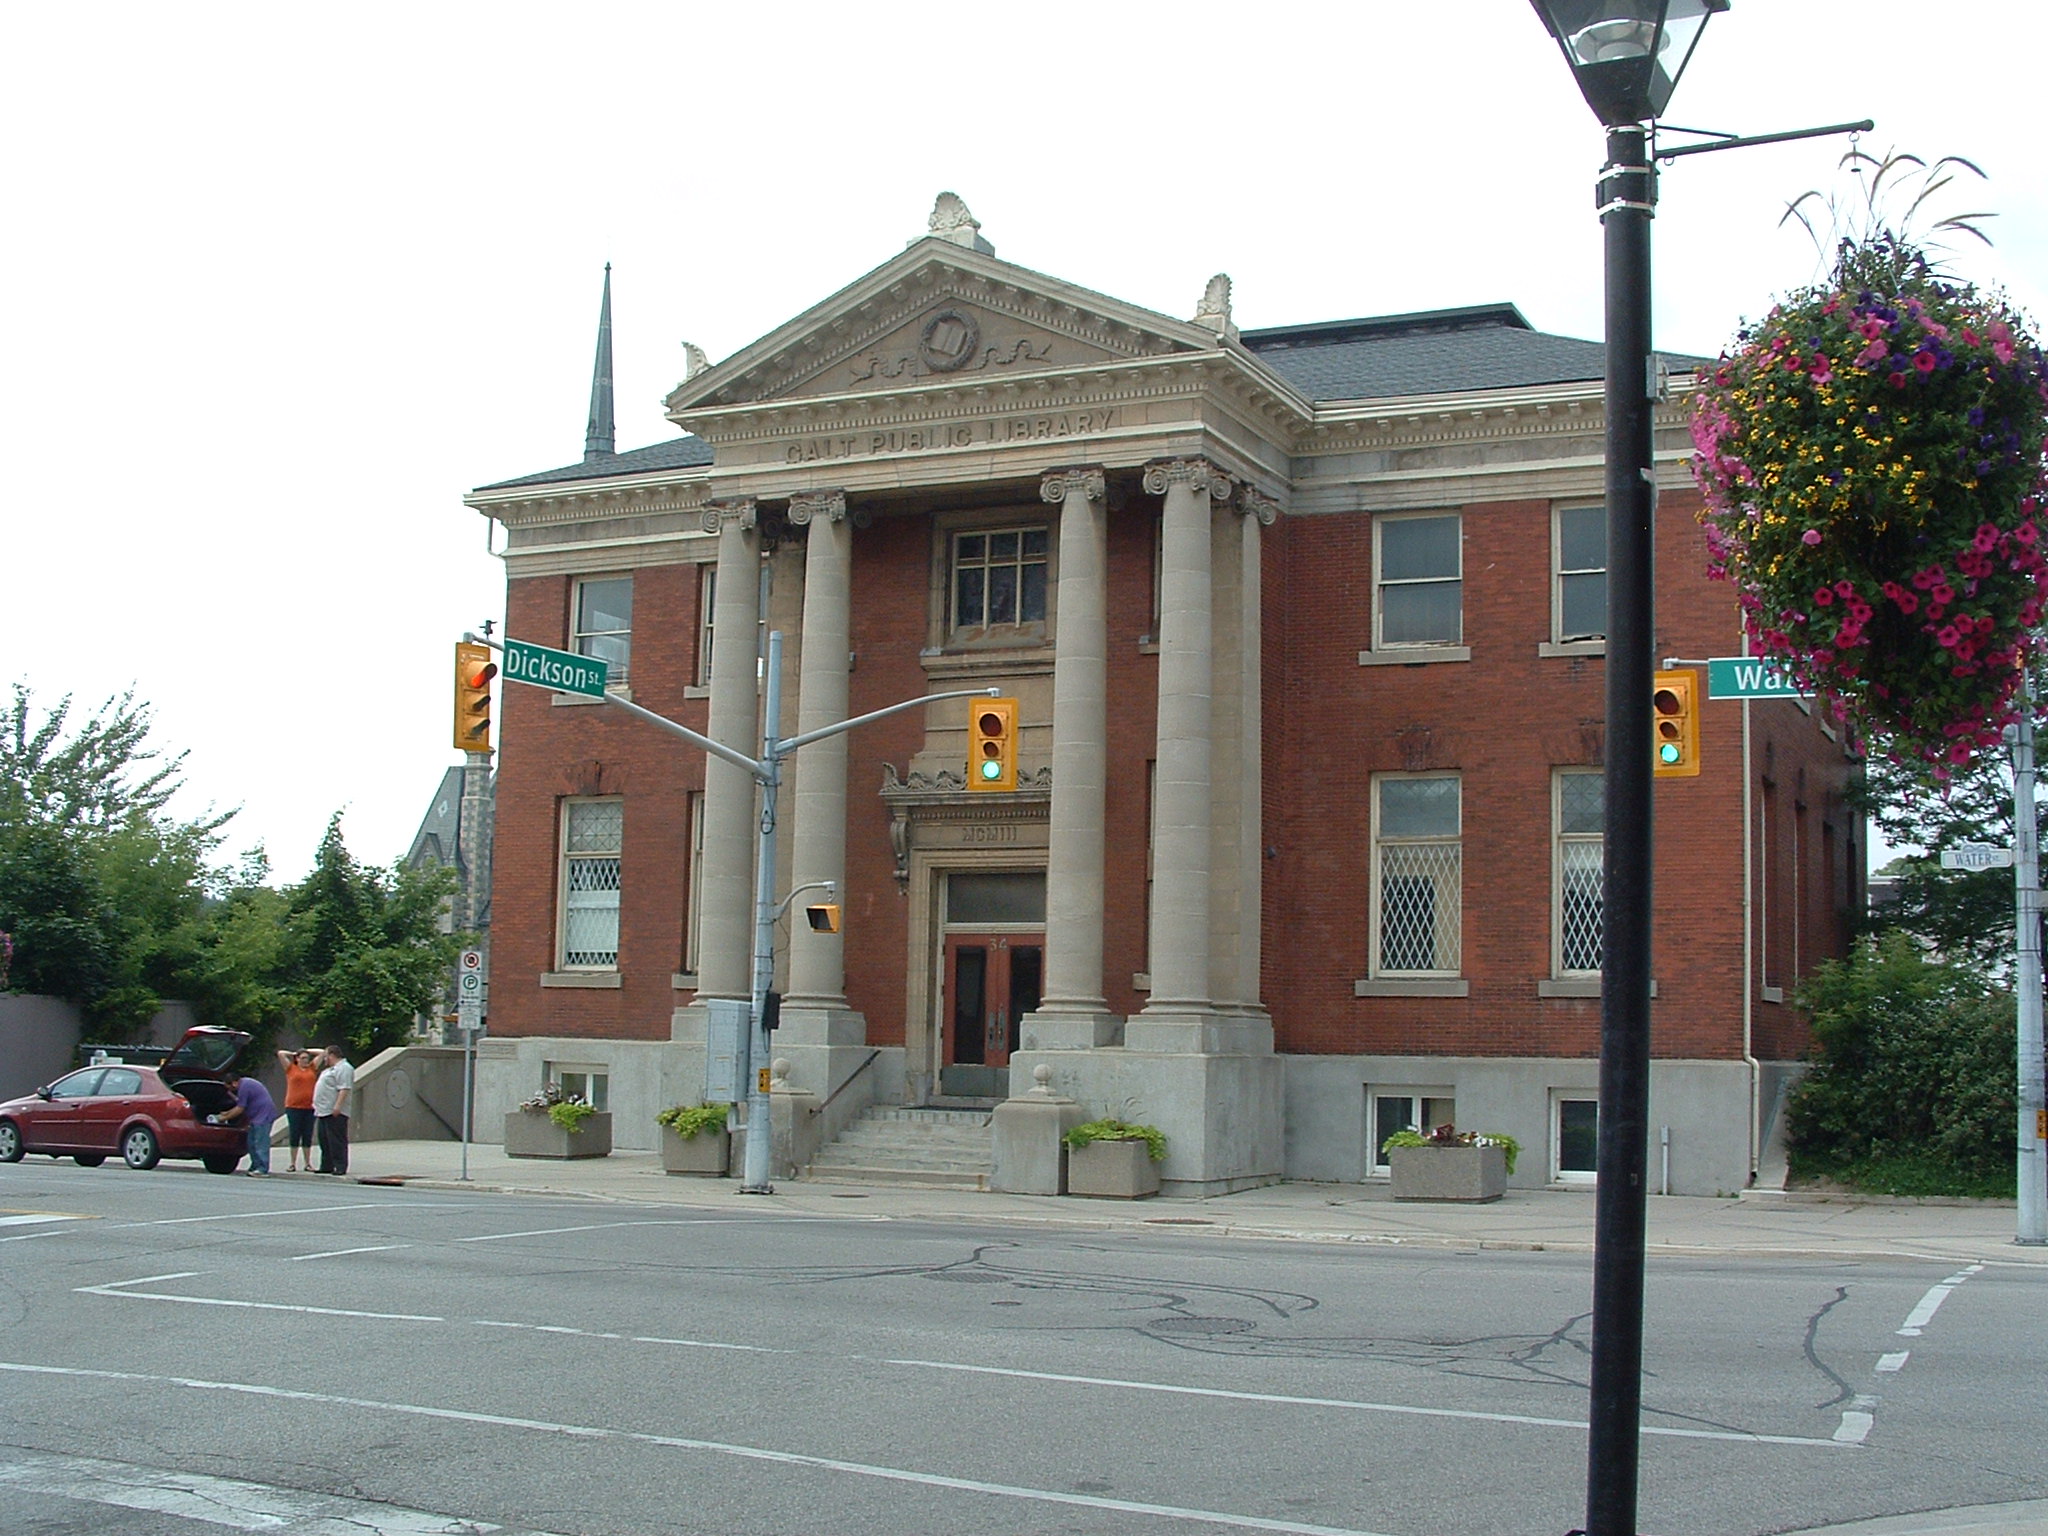 Galt Public Library Building, Cambridge Ontario Canada Image